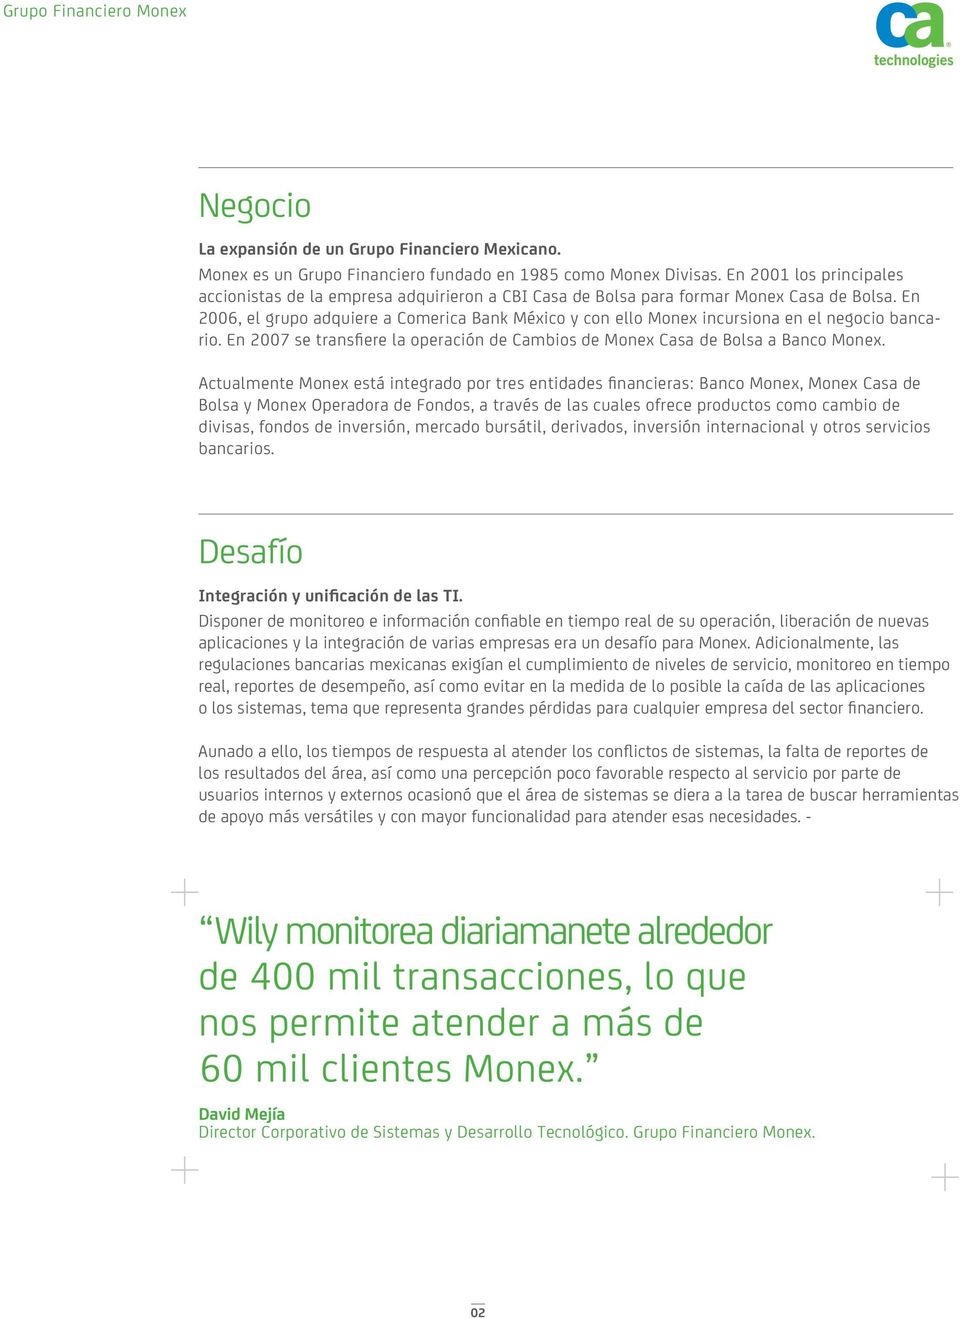 En 2006, el grupo adquiere a Comerica Bank México y con ello Monex incursiona en el negocio bancario. En 2007 se transfiere la operación de Cambios de Monex Casa de Bolsa a Banco Monex.